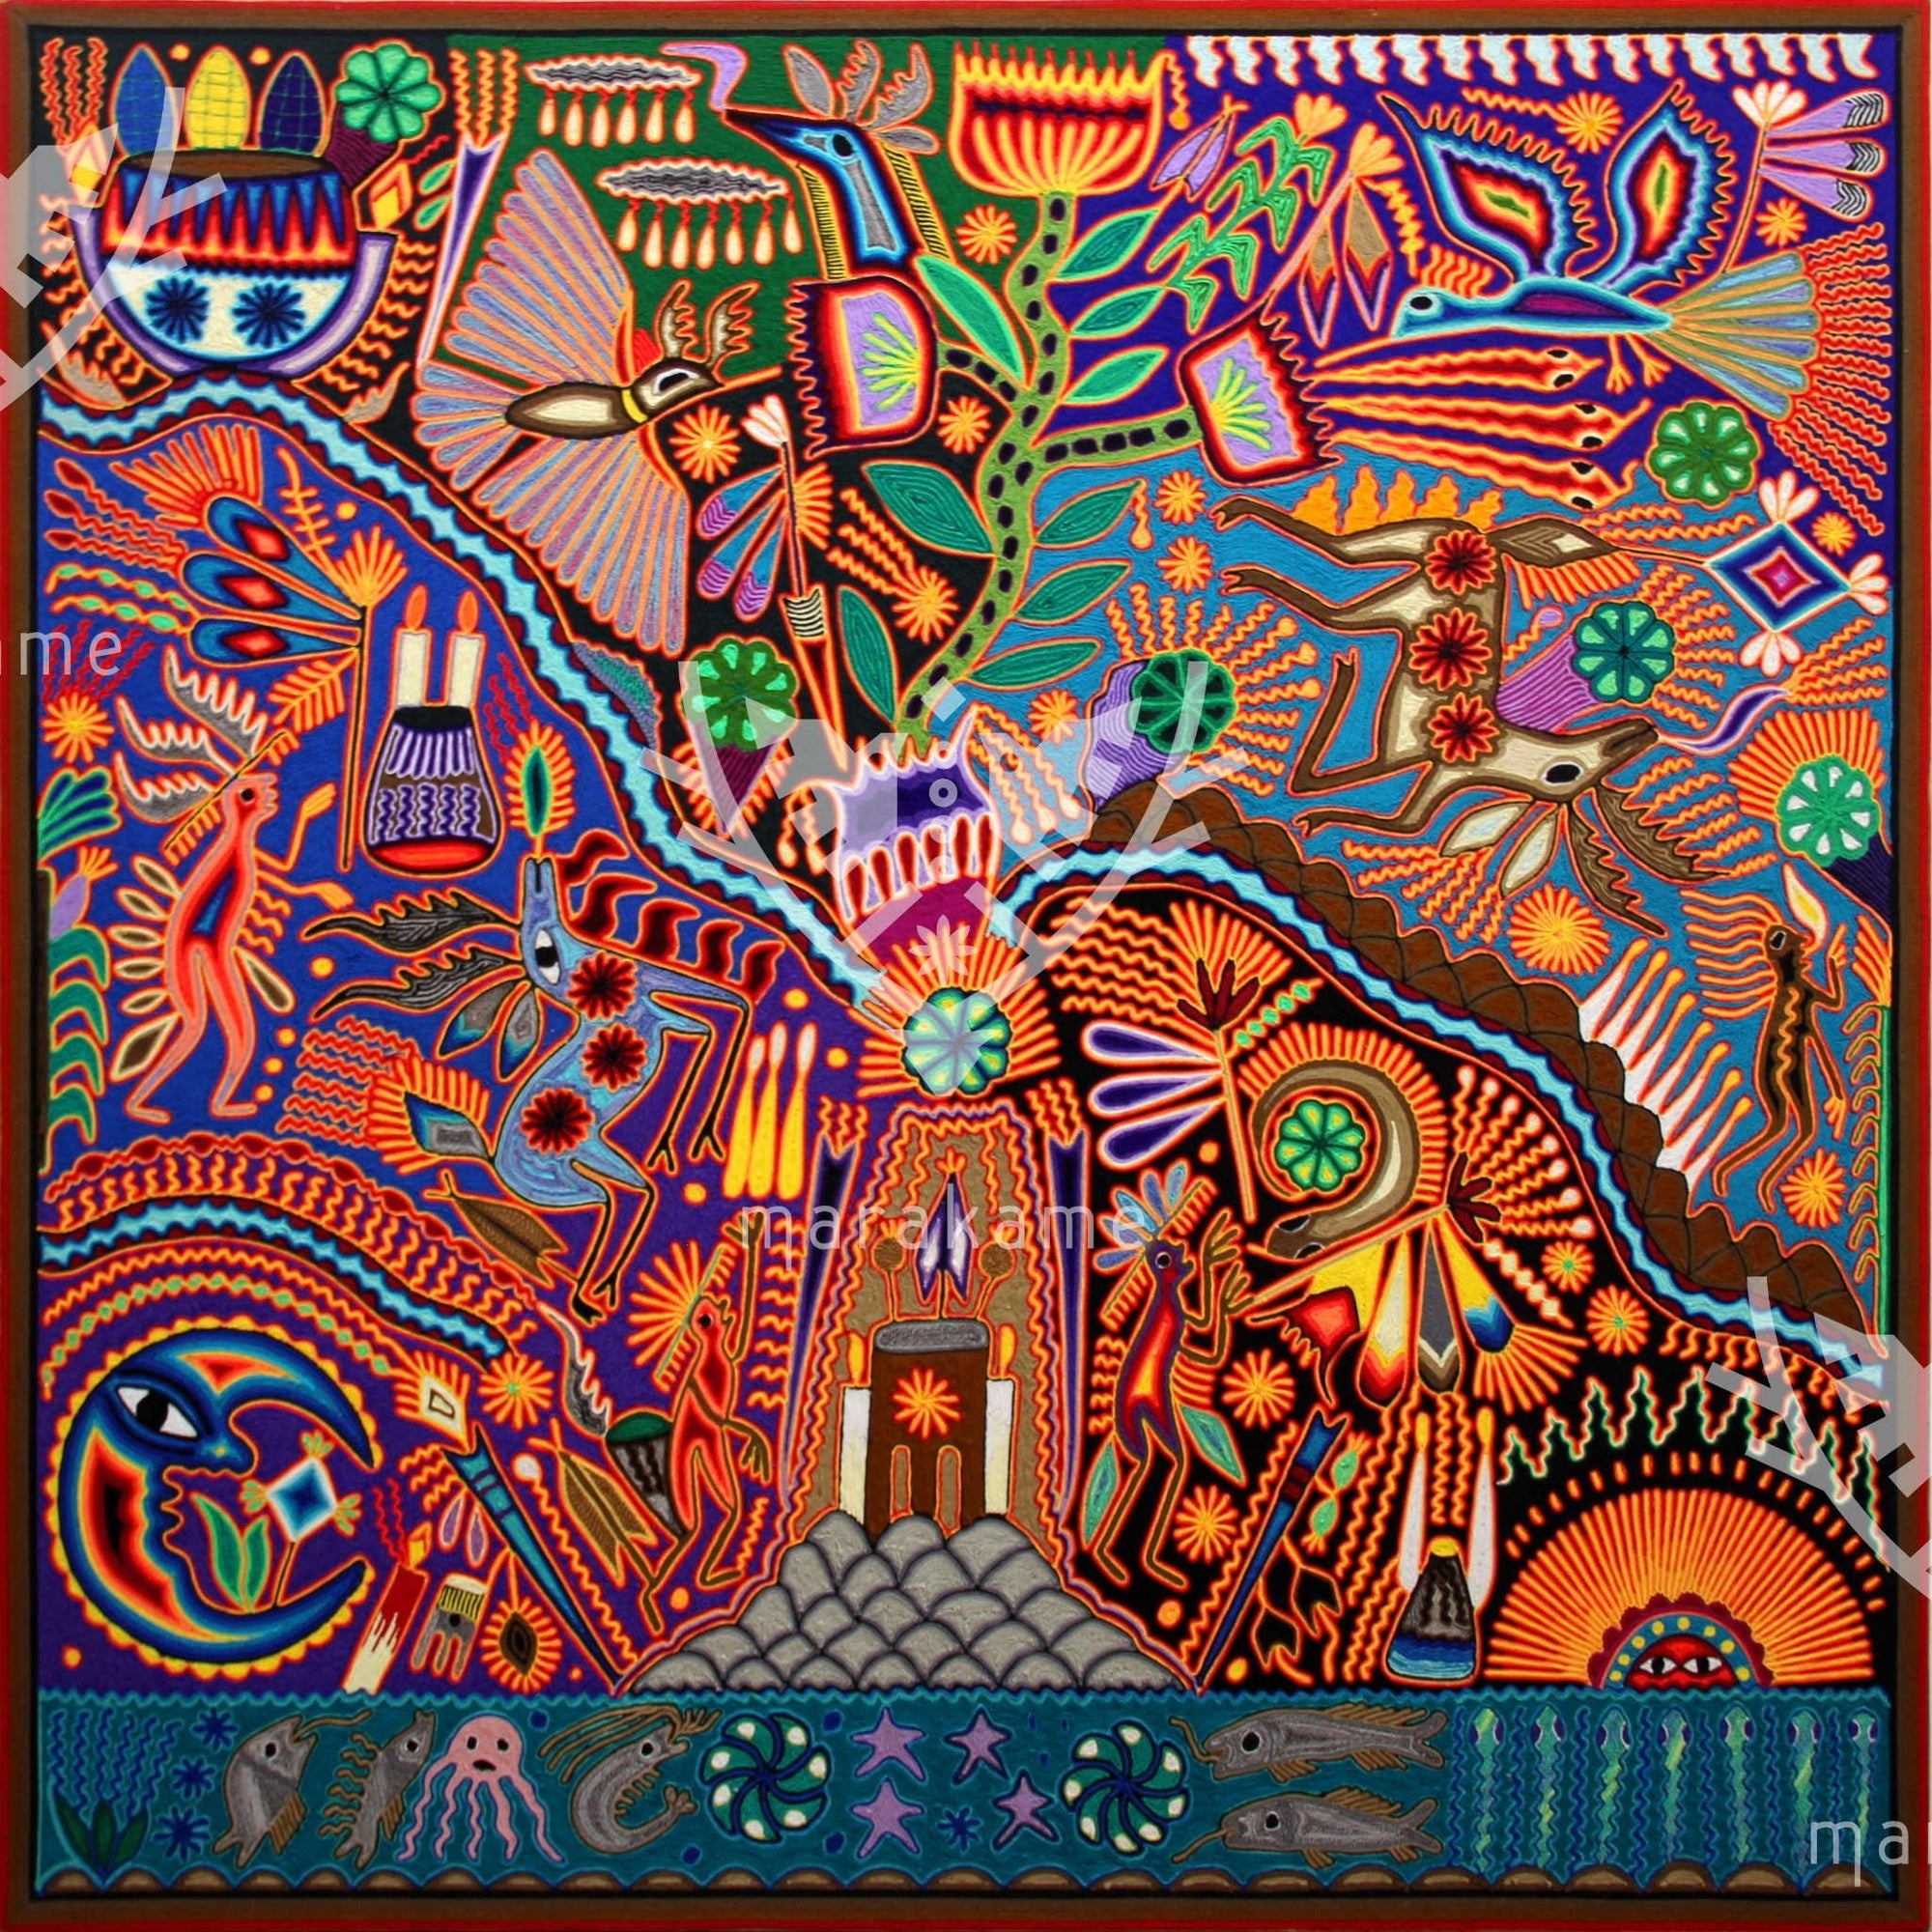 Nierika de Estambre Cuadro Huichol - Uykuri tsimaruni - El Peyote prohibido - 120 x 120 cm. - Arte Huichol - Marakame